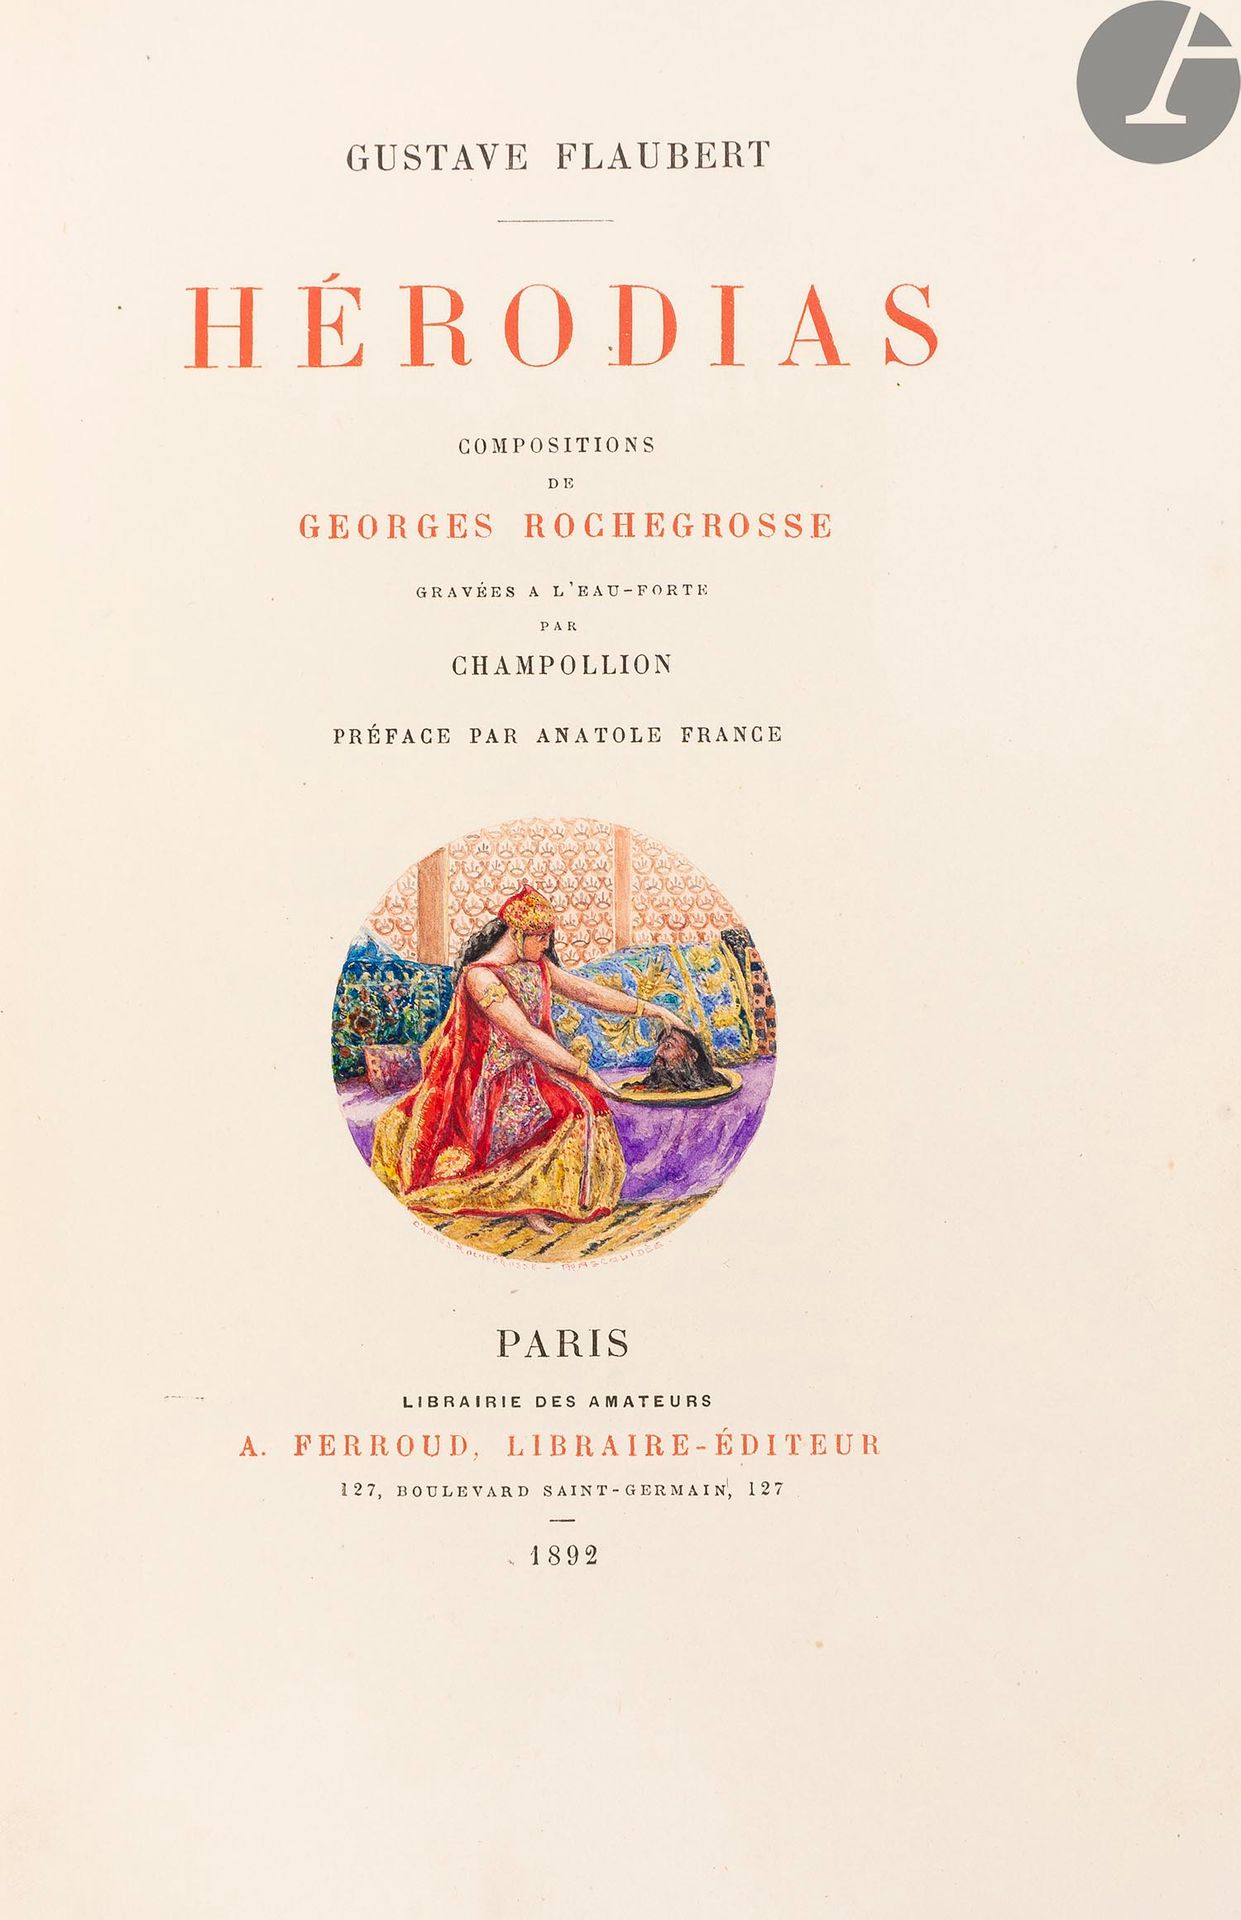 Null FLAUBERT（古斯塔夫）。
Hérodias。安纳托尔-法兰西的序言。
巴黎：A. Ferroud, 1892年。- In-8, 248 x 15&hellip;